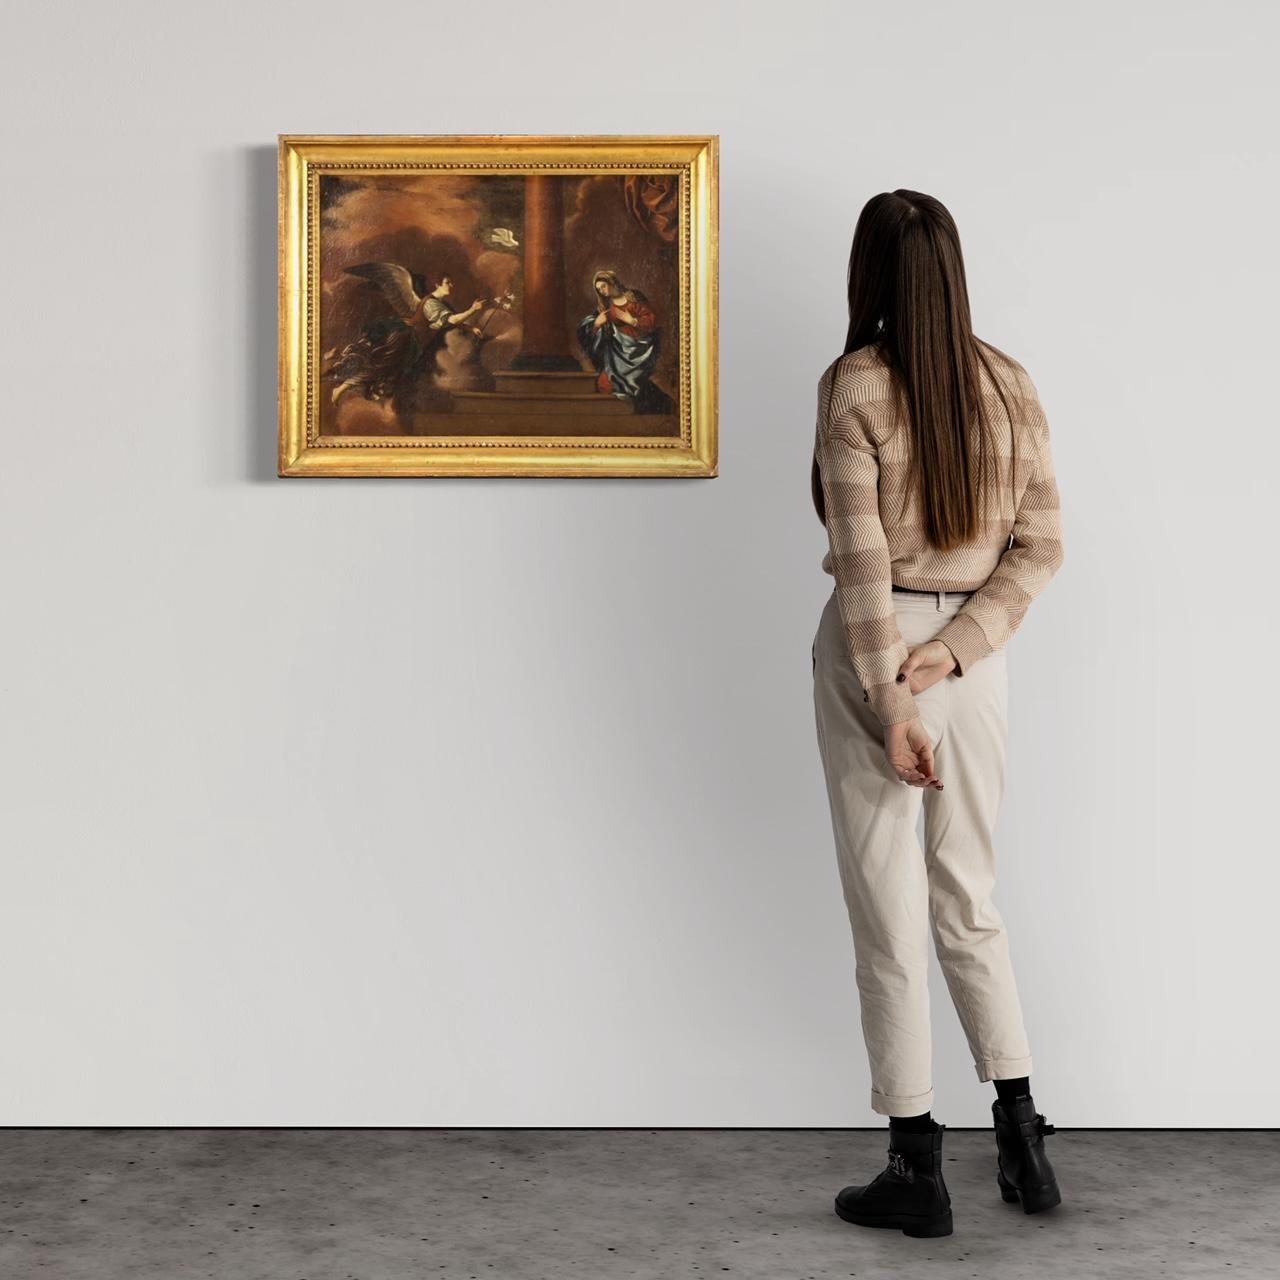 Antikes italienisches Gemälde aus dem 18. Jahrhundert. Kunstwerk Öl auf Leinwand, das ein religiöses Thema darstellt, Verkündigung von guter malerischer Qualität. Wunderschönes, großformatiges und angenehm dekoriertes Gemälde mit einem nicht